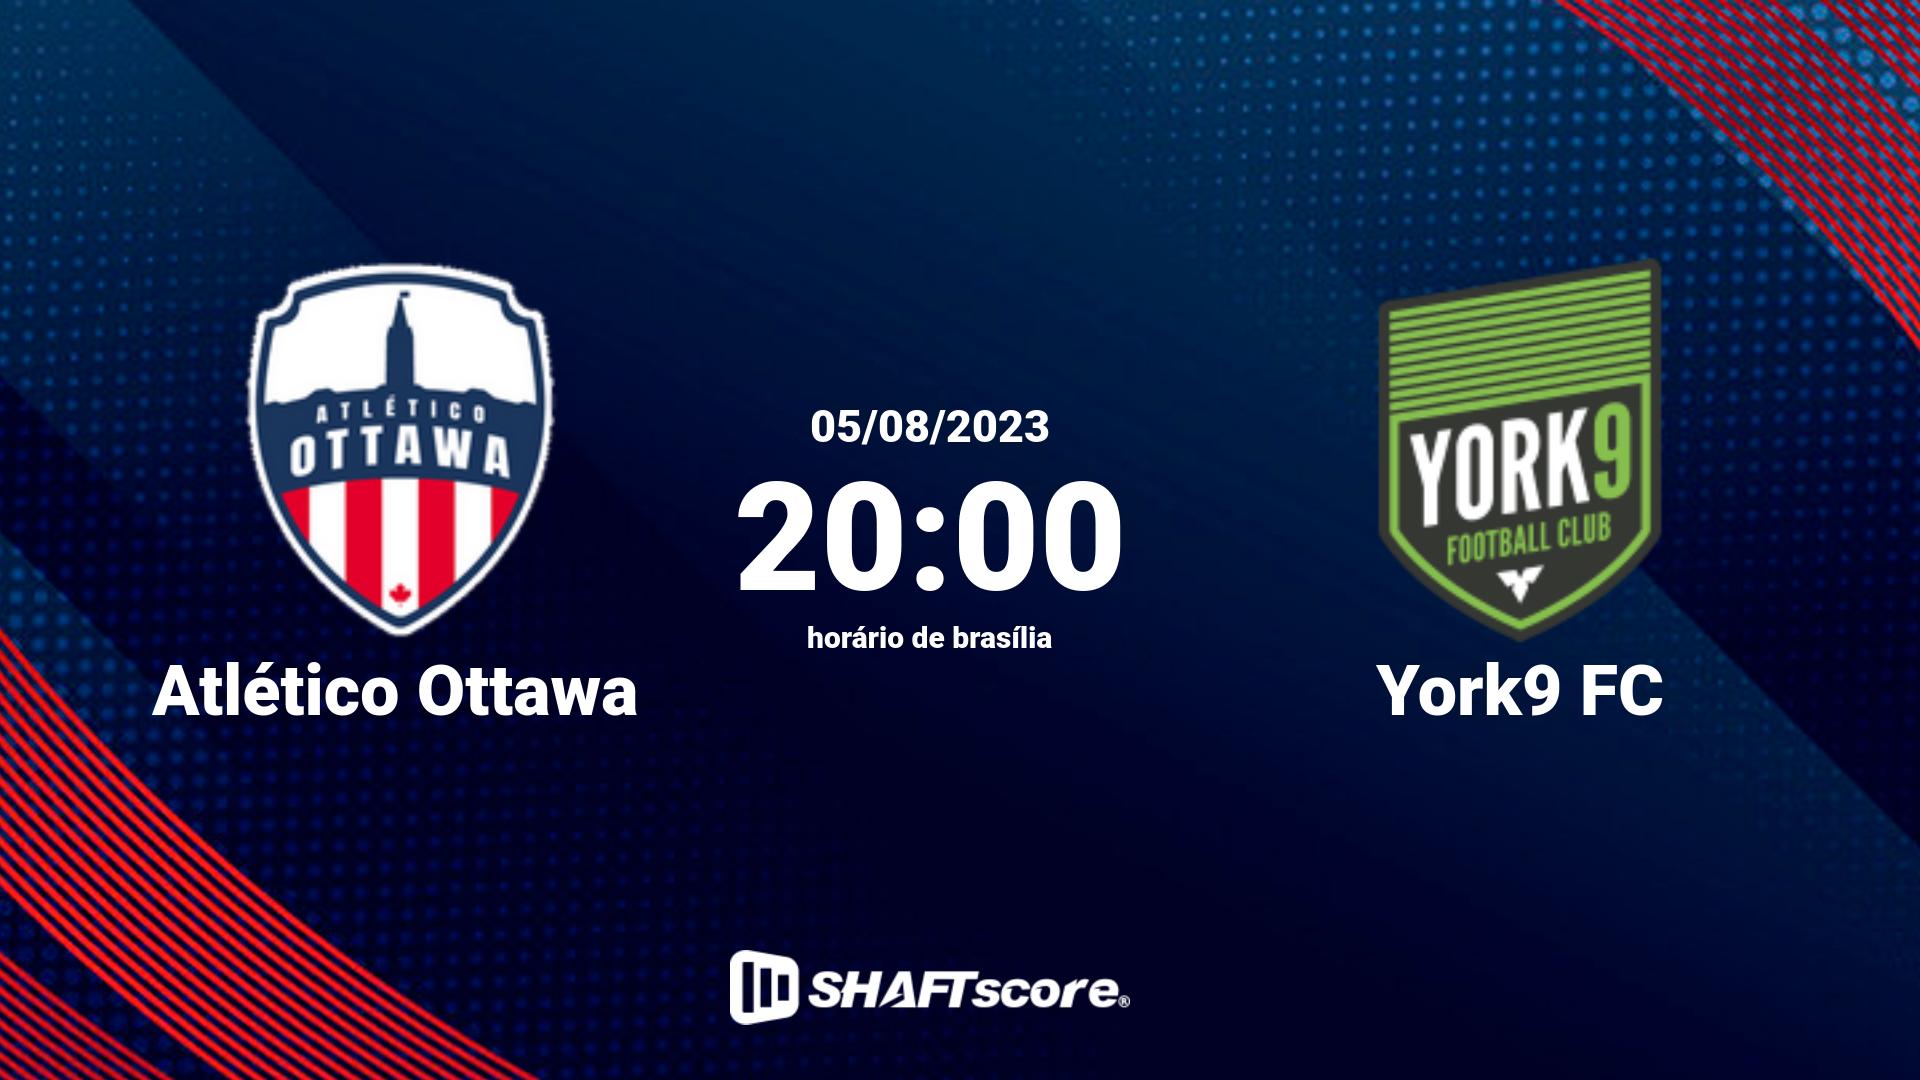 Estatísticas do jogo Atlético Ottawa vs York9 FC 05.08 20:00